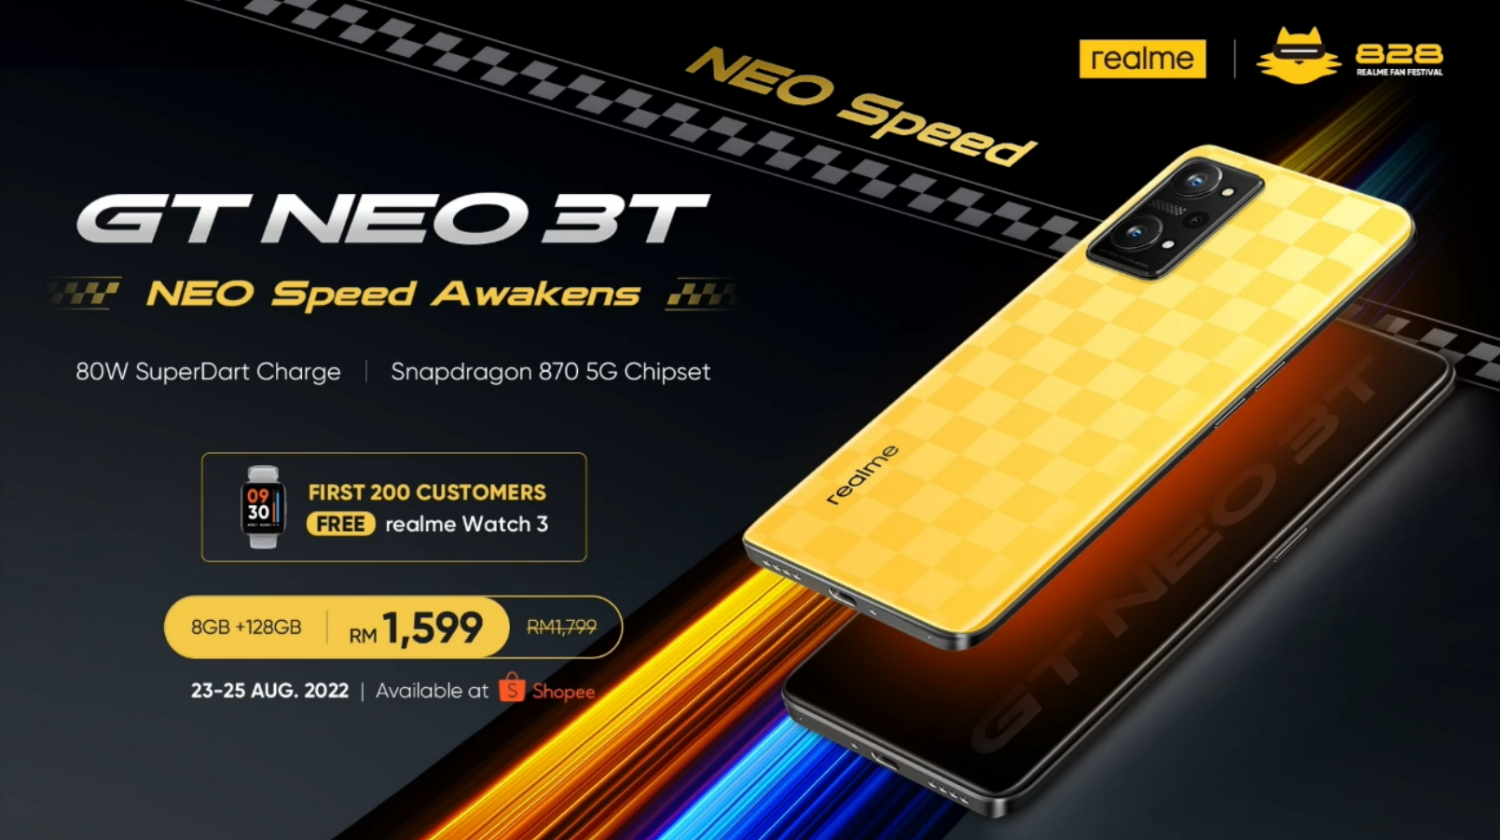 Realme GT Neo 3T Kini Rasmi Di Malaysia Pada Harga RM1799